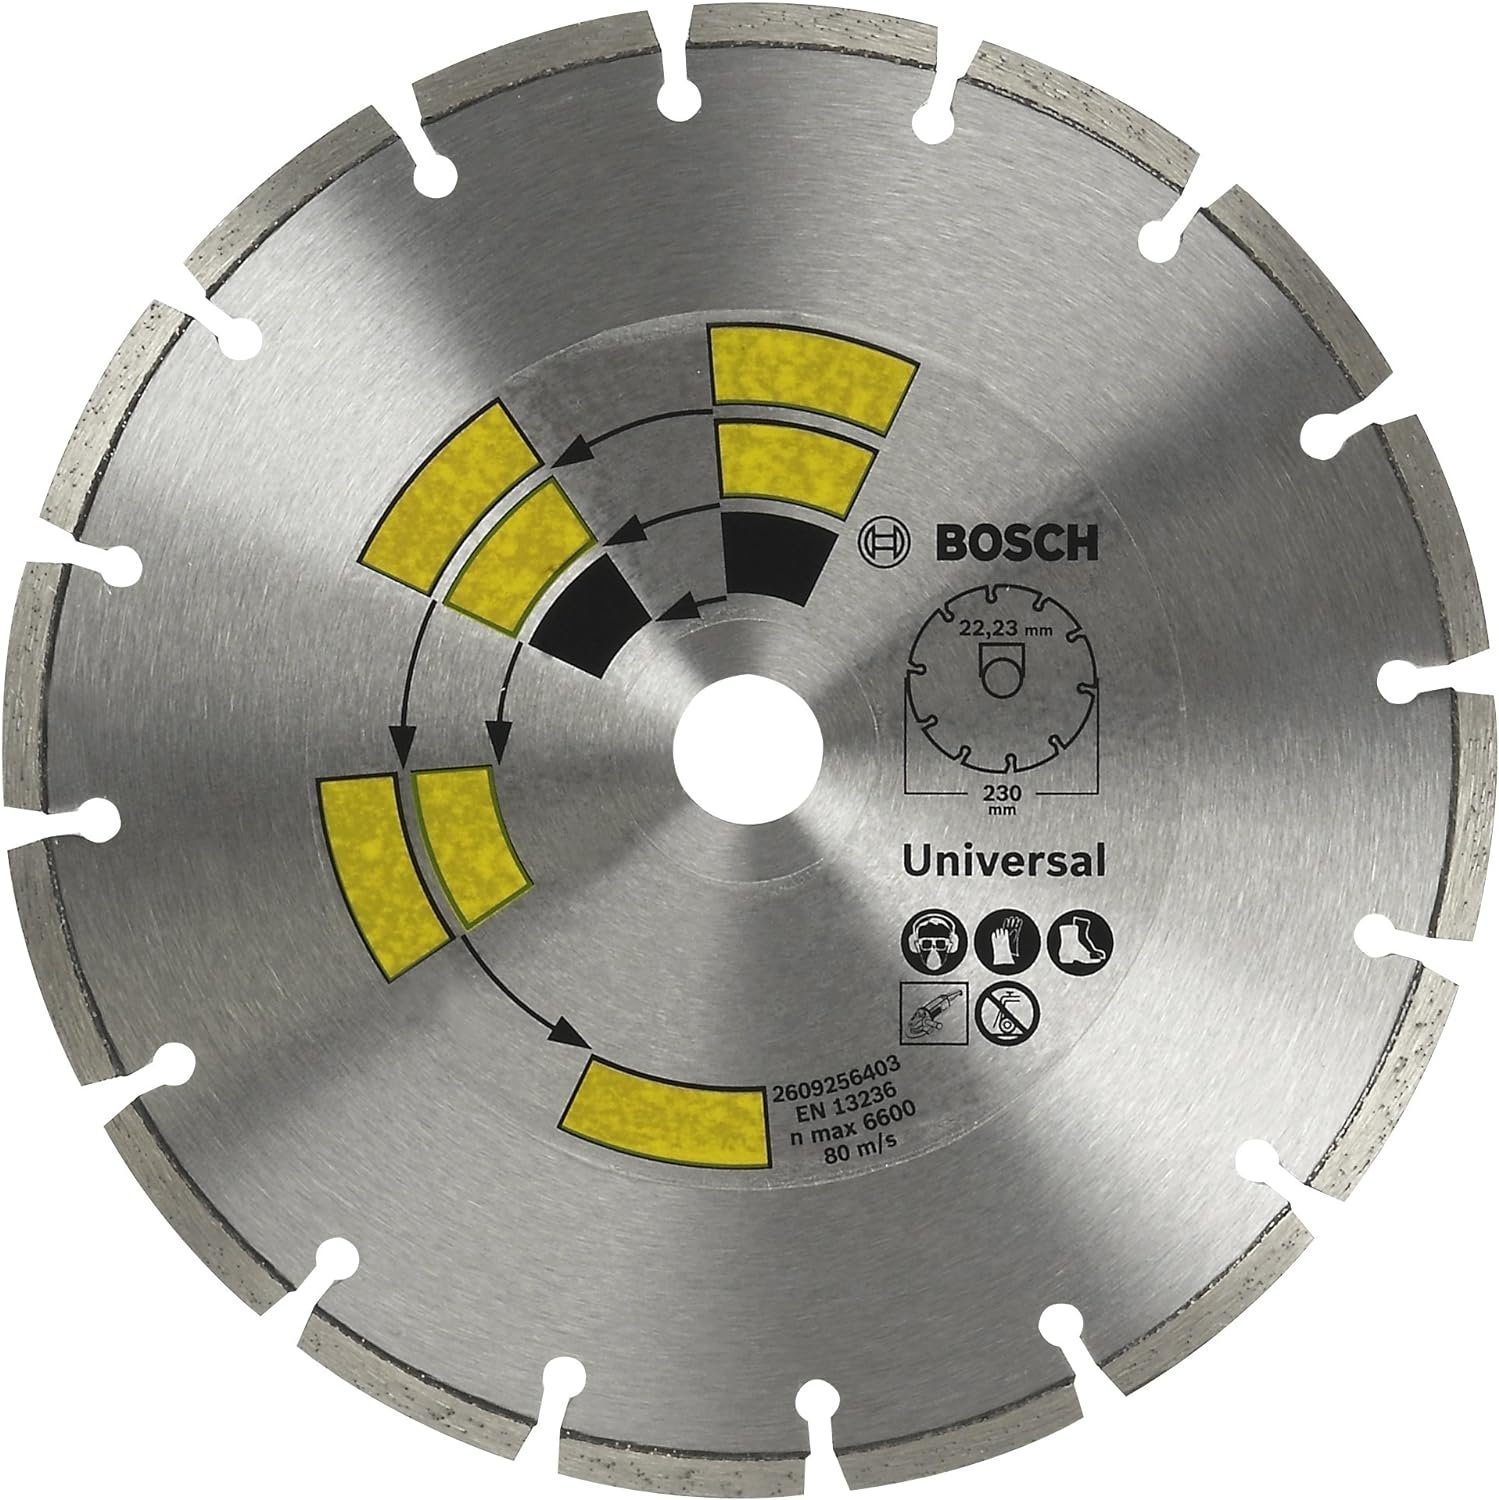 BOSCH Bohrfutter Bosch Turbo Allzweck Diamanttrennscheibe Universal 2609256403 Top